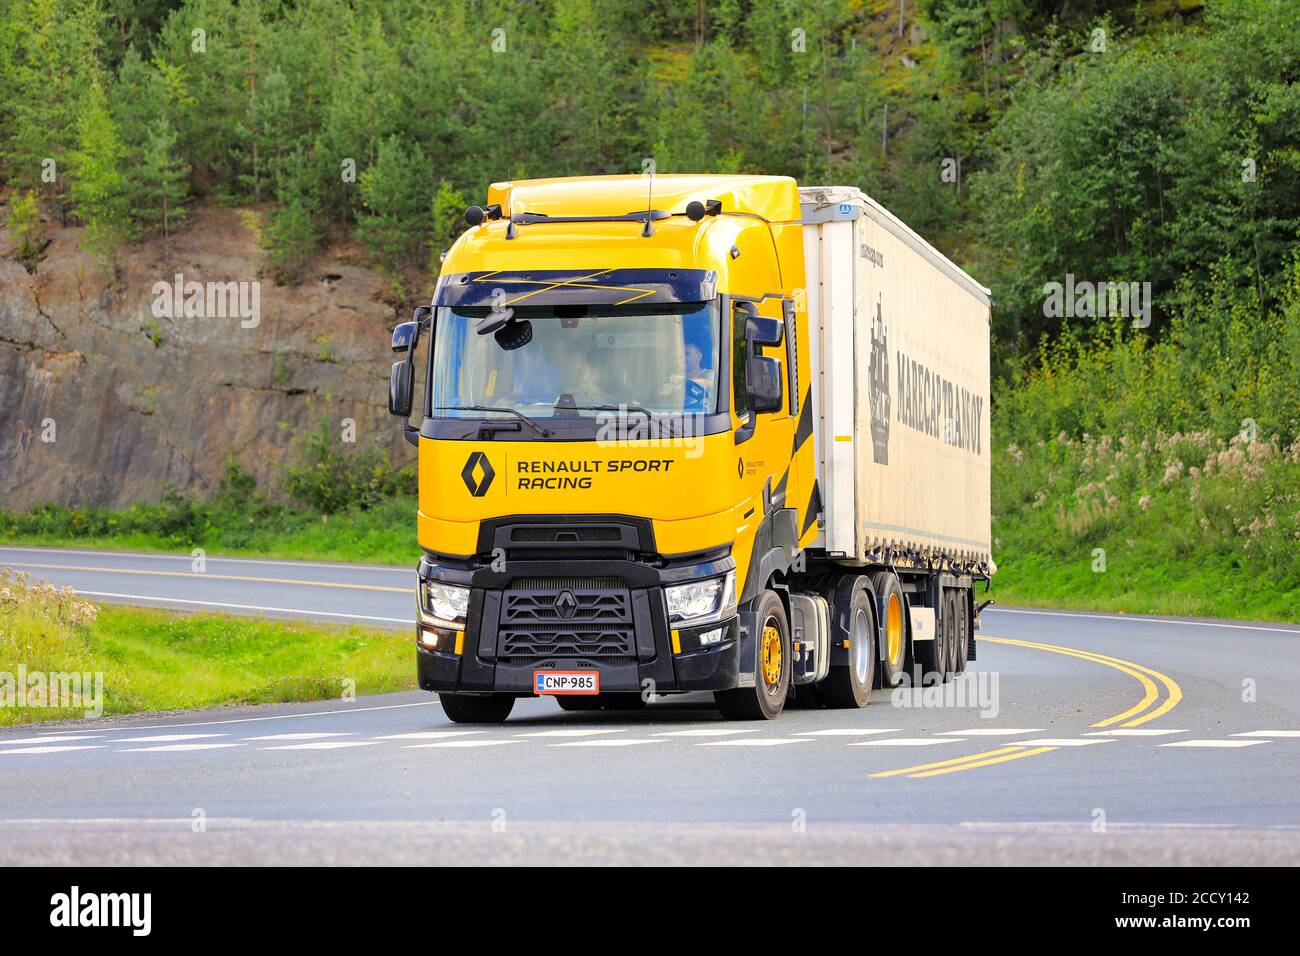 Renault Trucks T High Renault Sport Racing, Sirius jaune, édition limitée de 100 véhicules, dont 10 en Finlande. Forssa, Finlande. 21 août 20. Banque D'Images